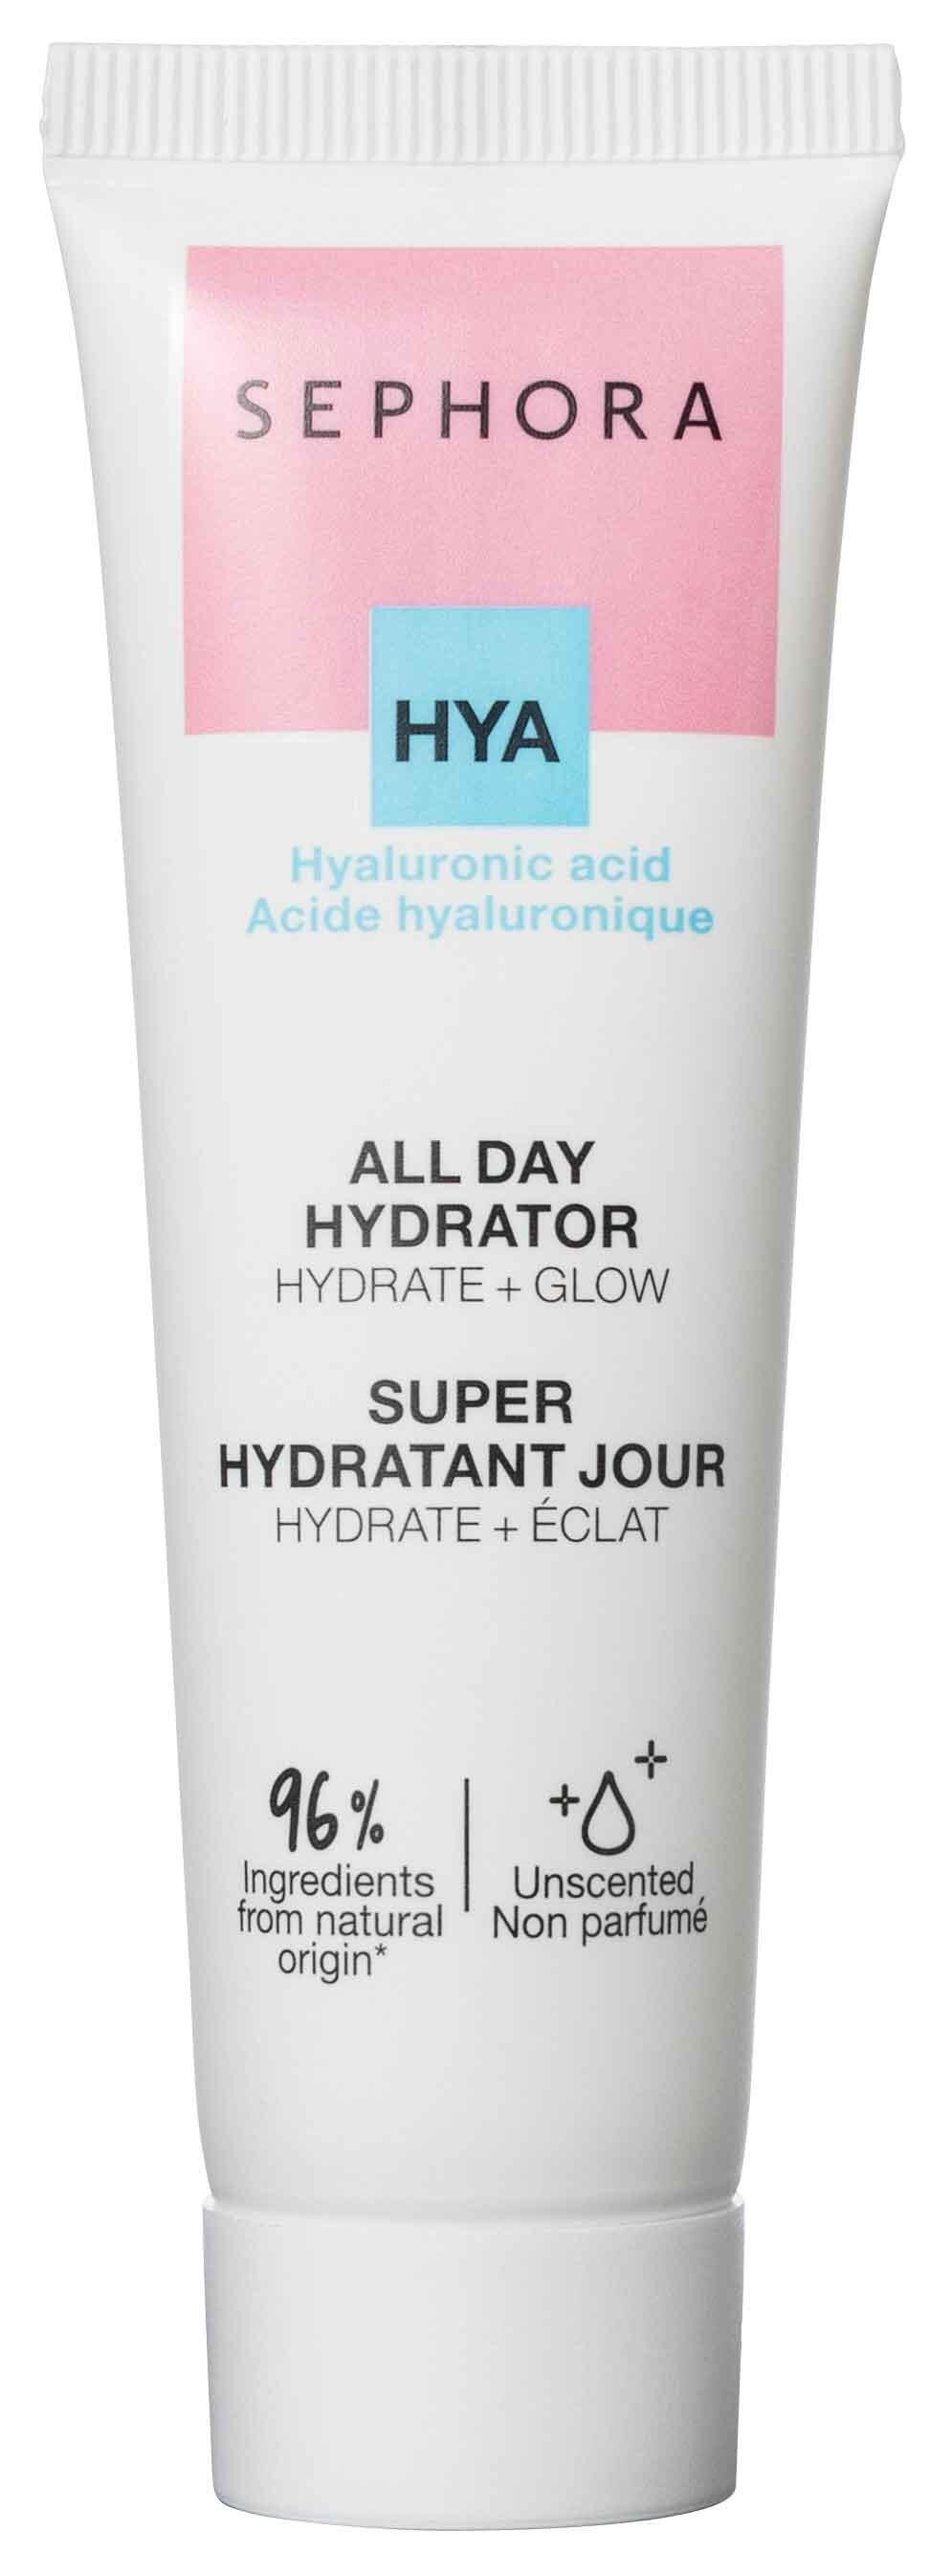 Hya All day hydrator Sephora